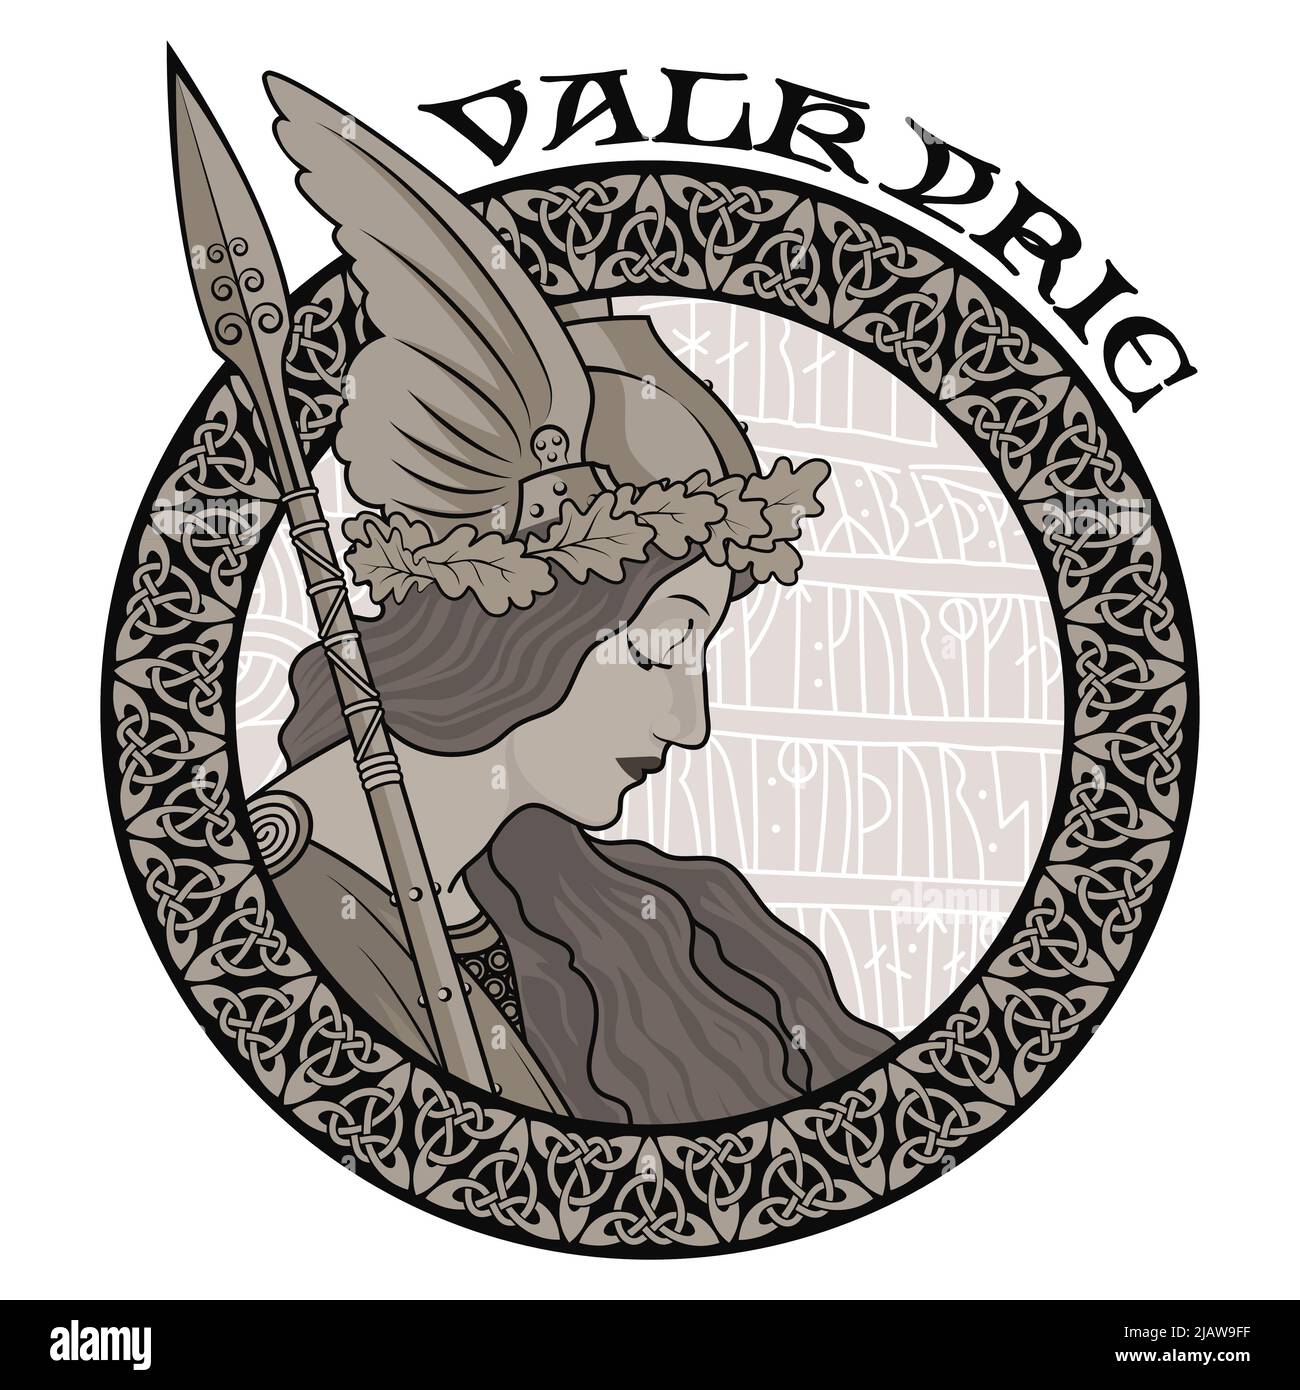 Valkyrie, illustrazione della mitologia scandinava, disegnata in stile Art Nouveau Illustrazione Vettoriale